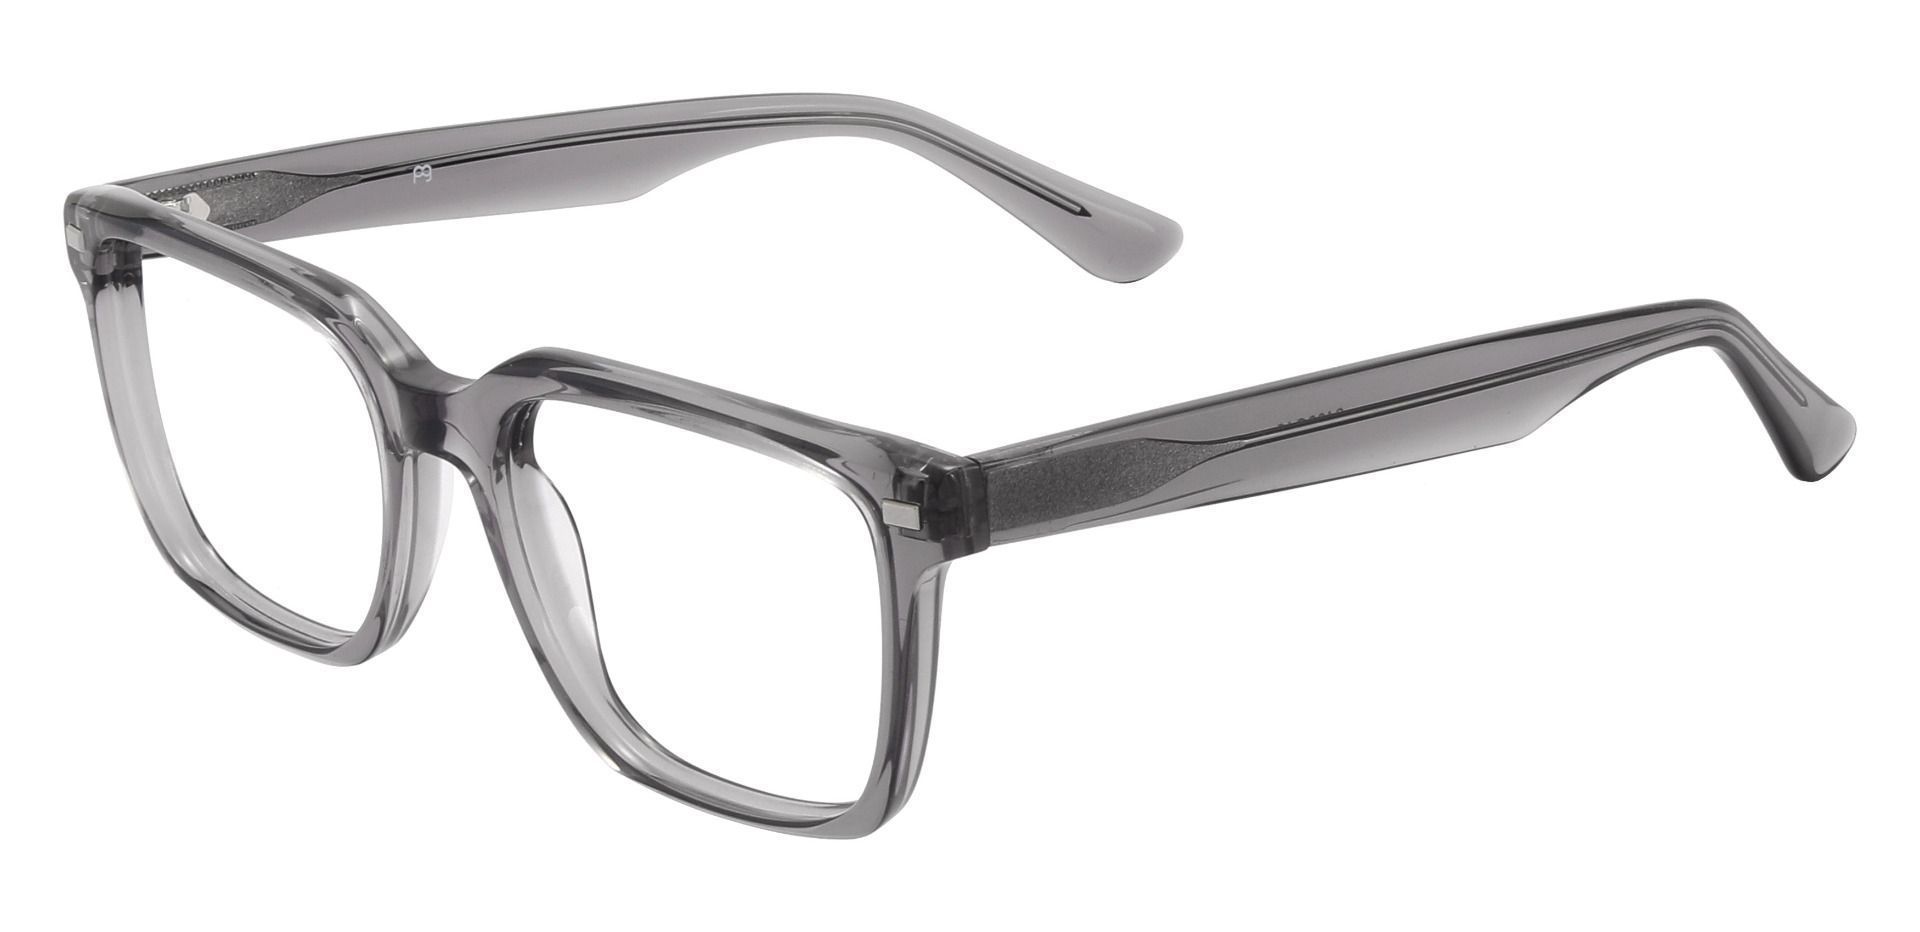 Monte Rectangle Prescription Glasses - Gray